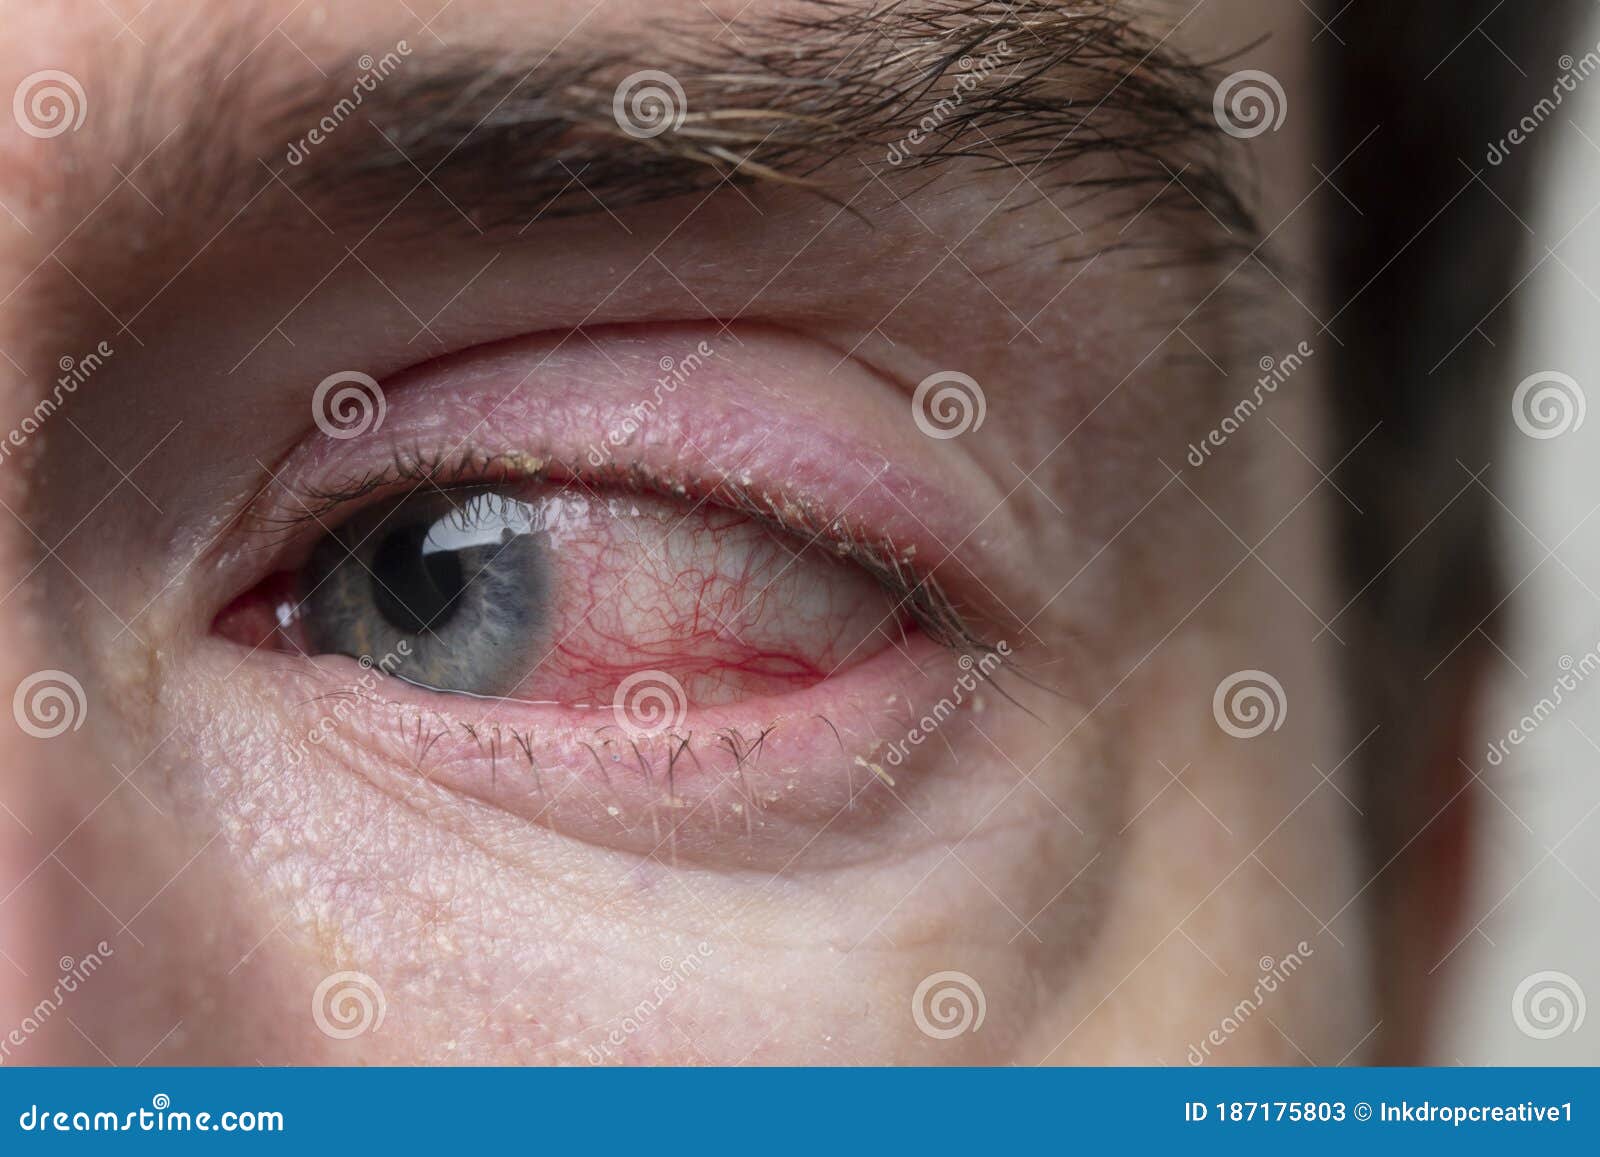 红斑眼 — 结膜炎的特写 库存照片. 图片 包括有 疲乏, 花粉, 青光眼, 医疗, 虹膜, 病症, 成人 - 166890846